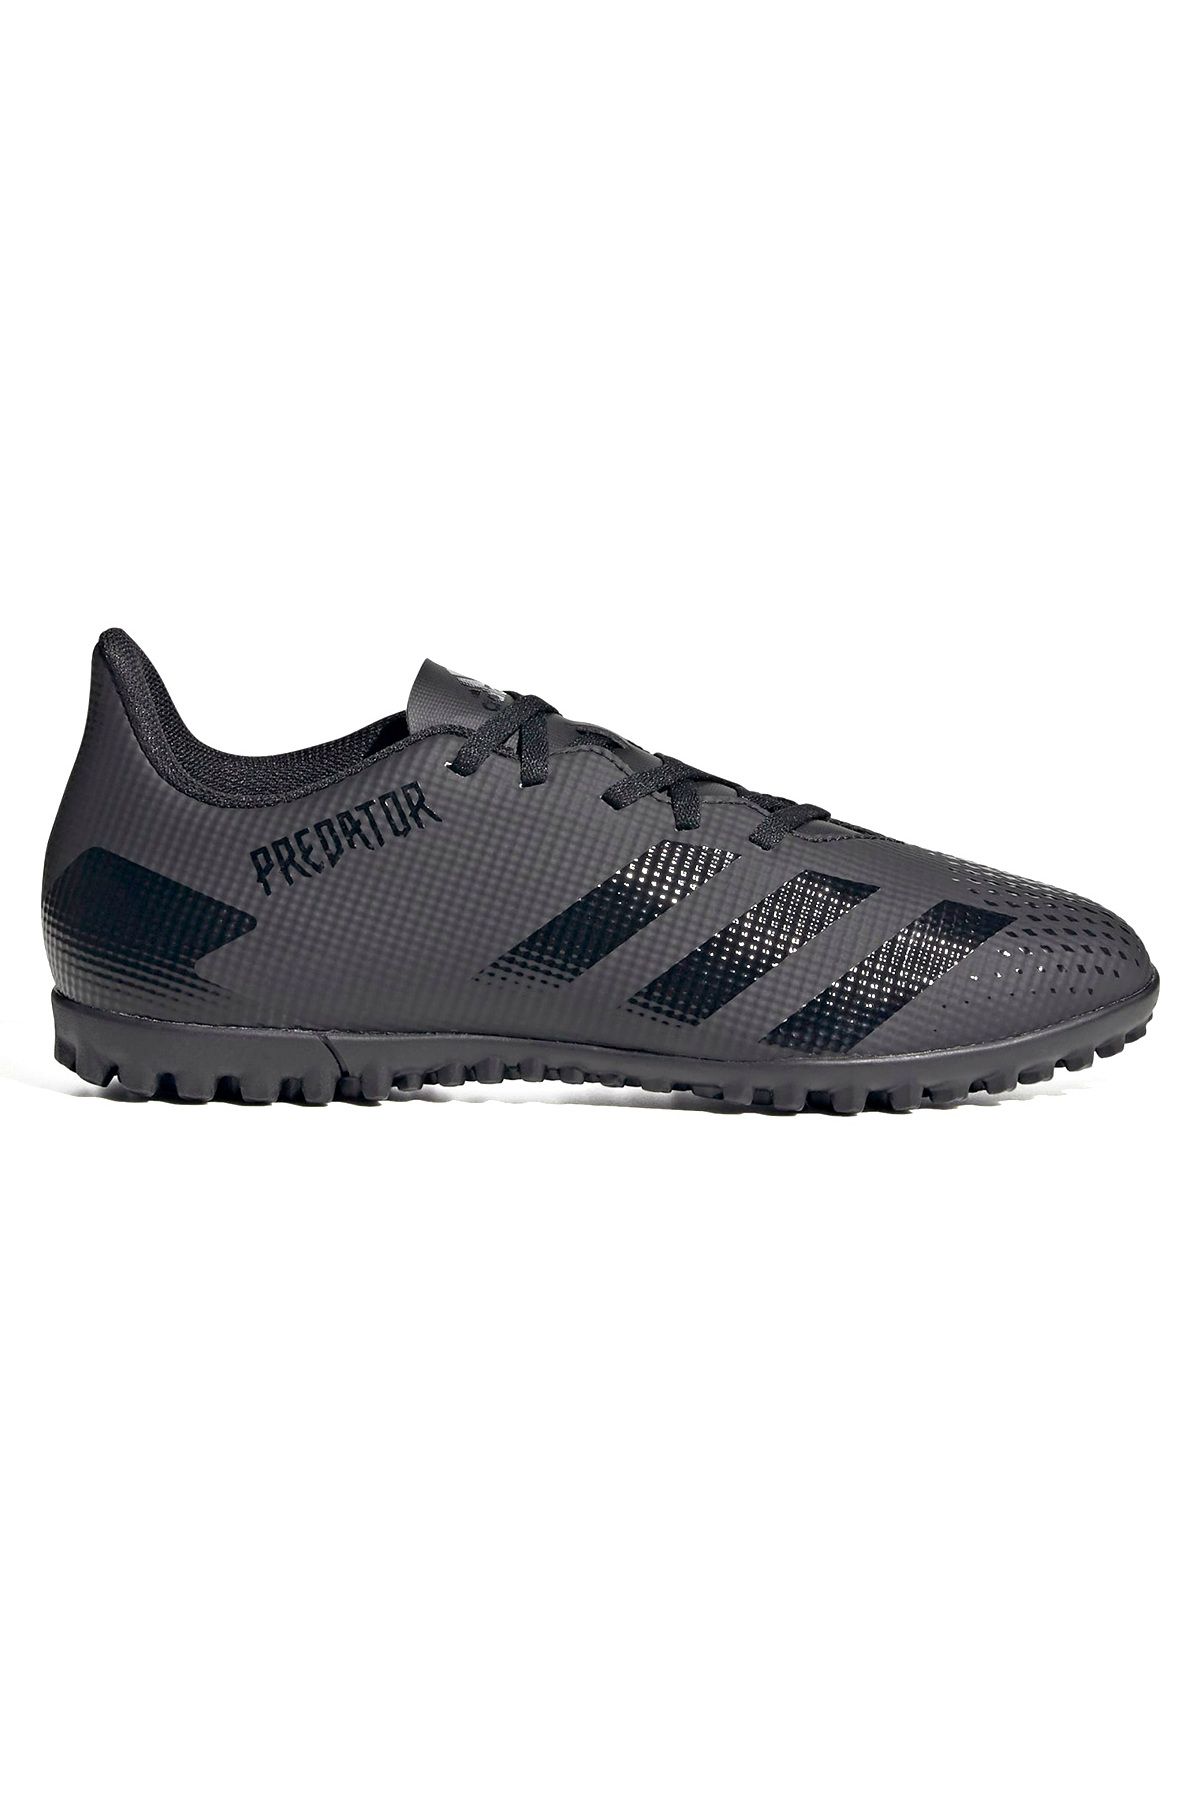 adidas Predator 20.4 Erkek Siyah Halı Saha Futbol Ayakkabısı Ef1662